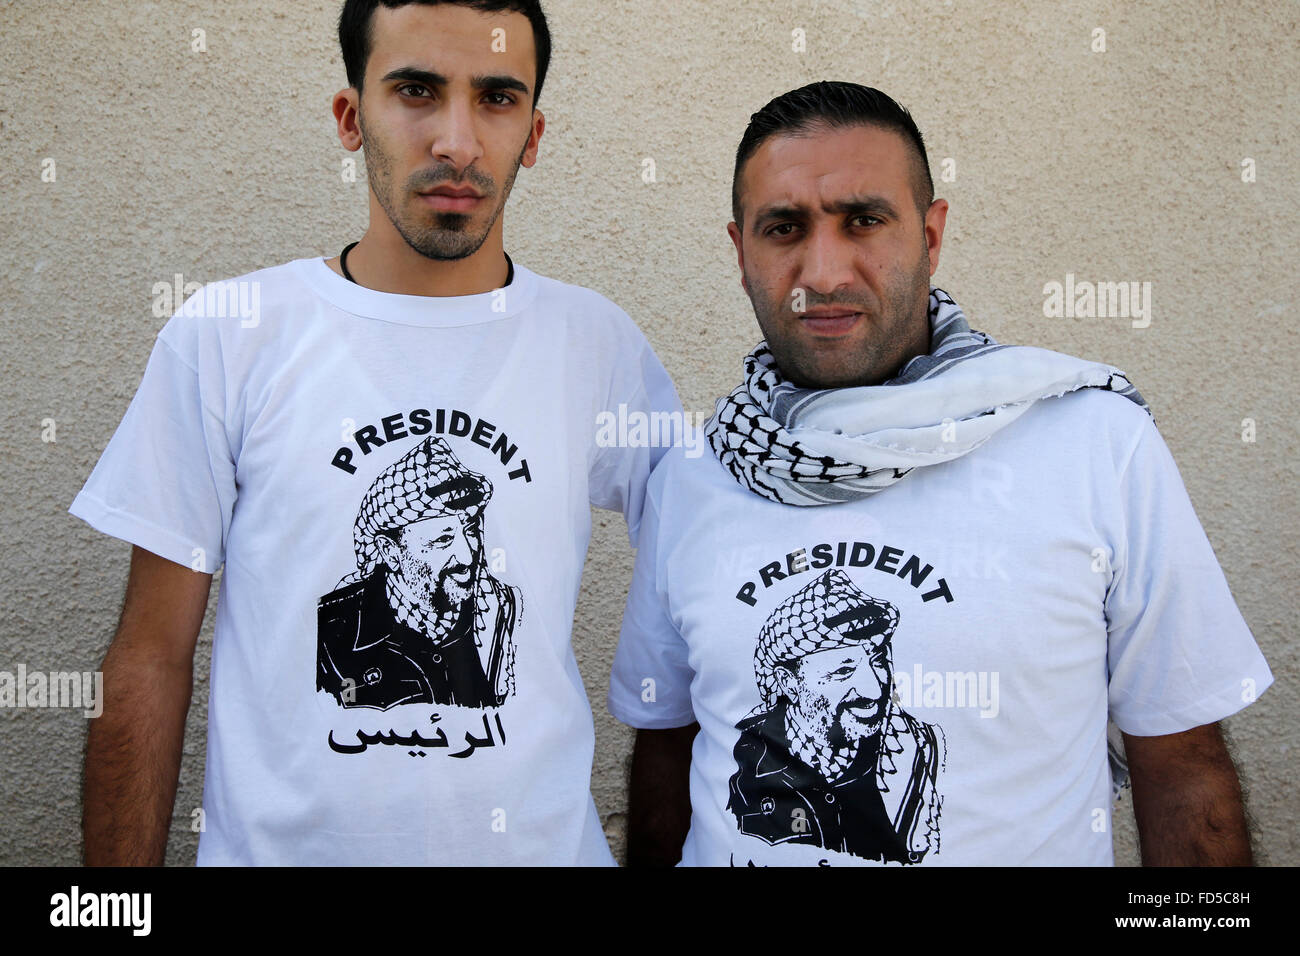 Yasser arafat palestina Palestine Arab revolución intifada t-shirt nuevo